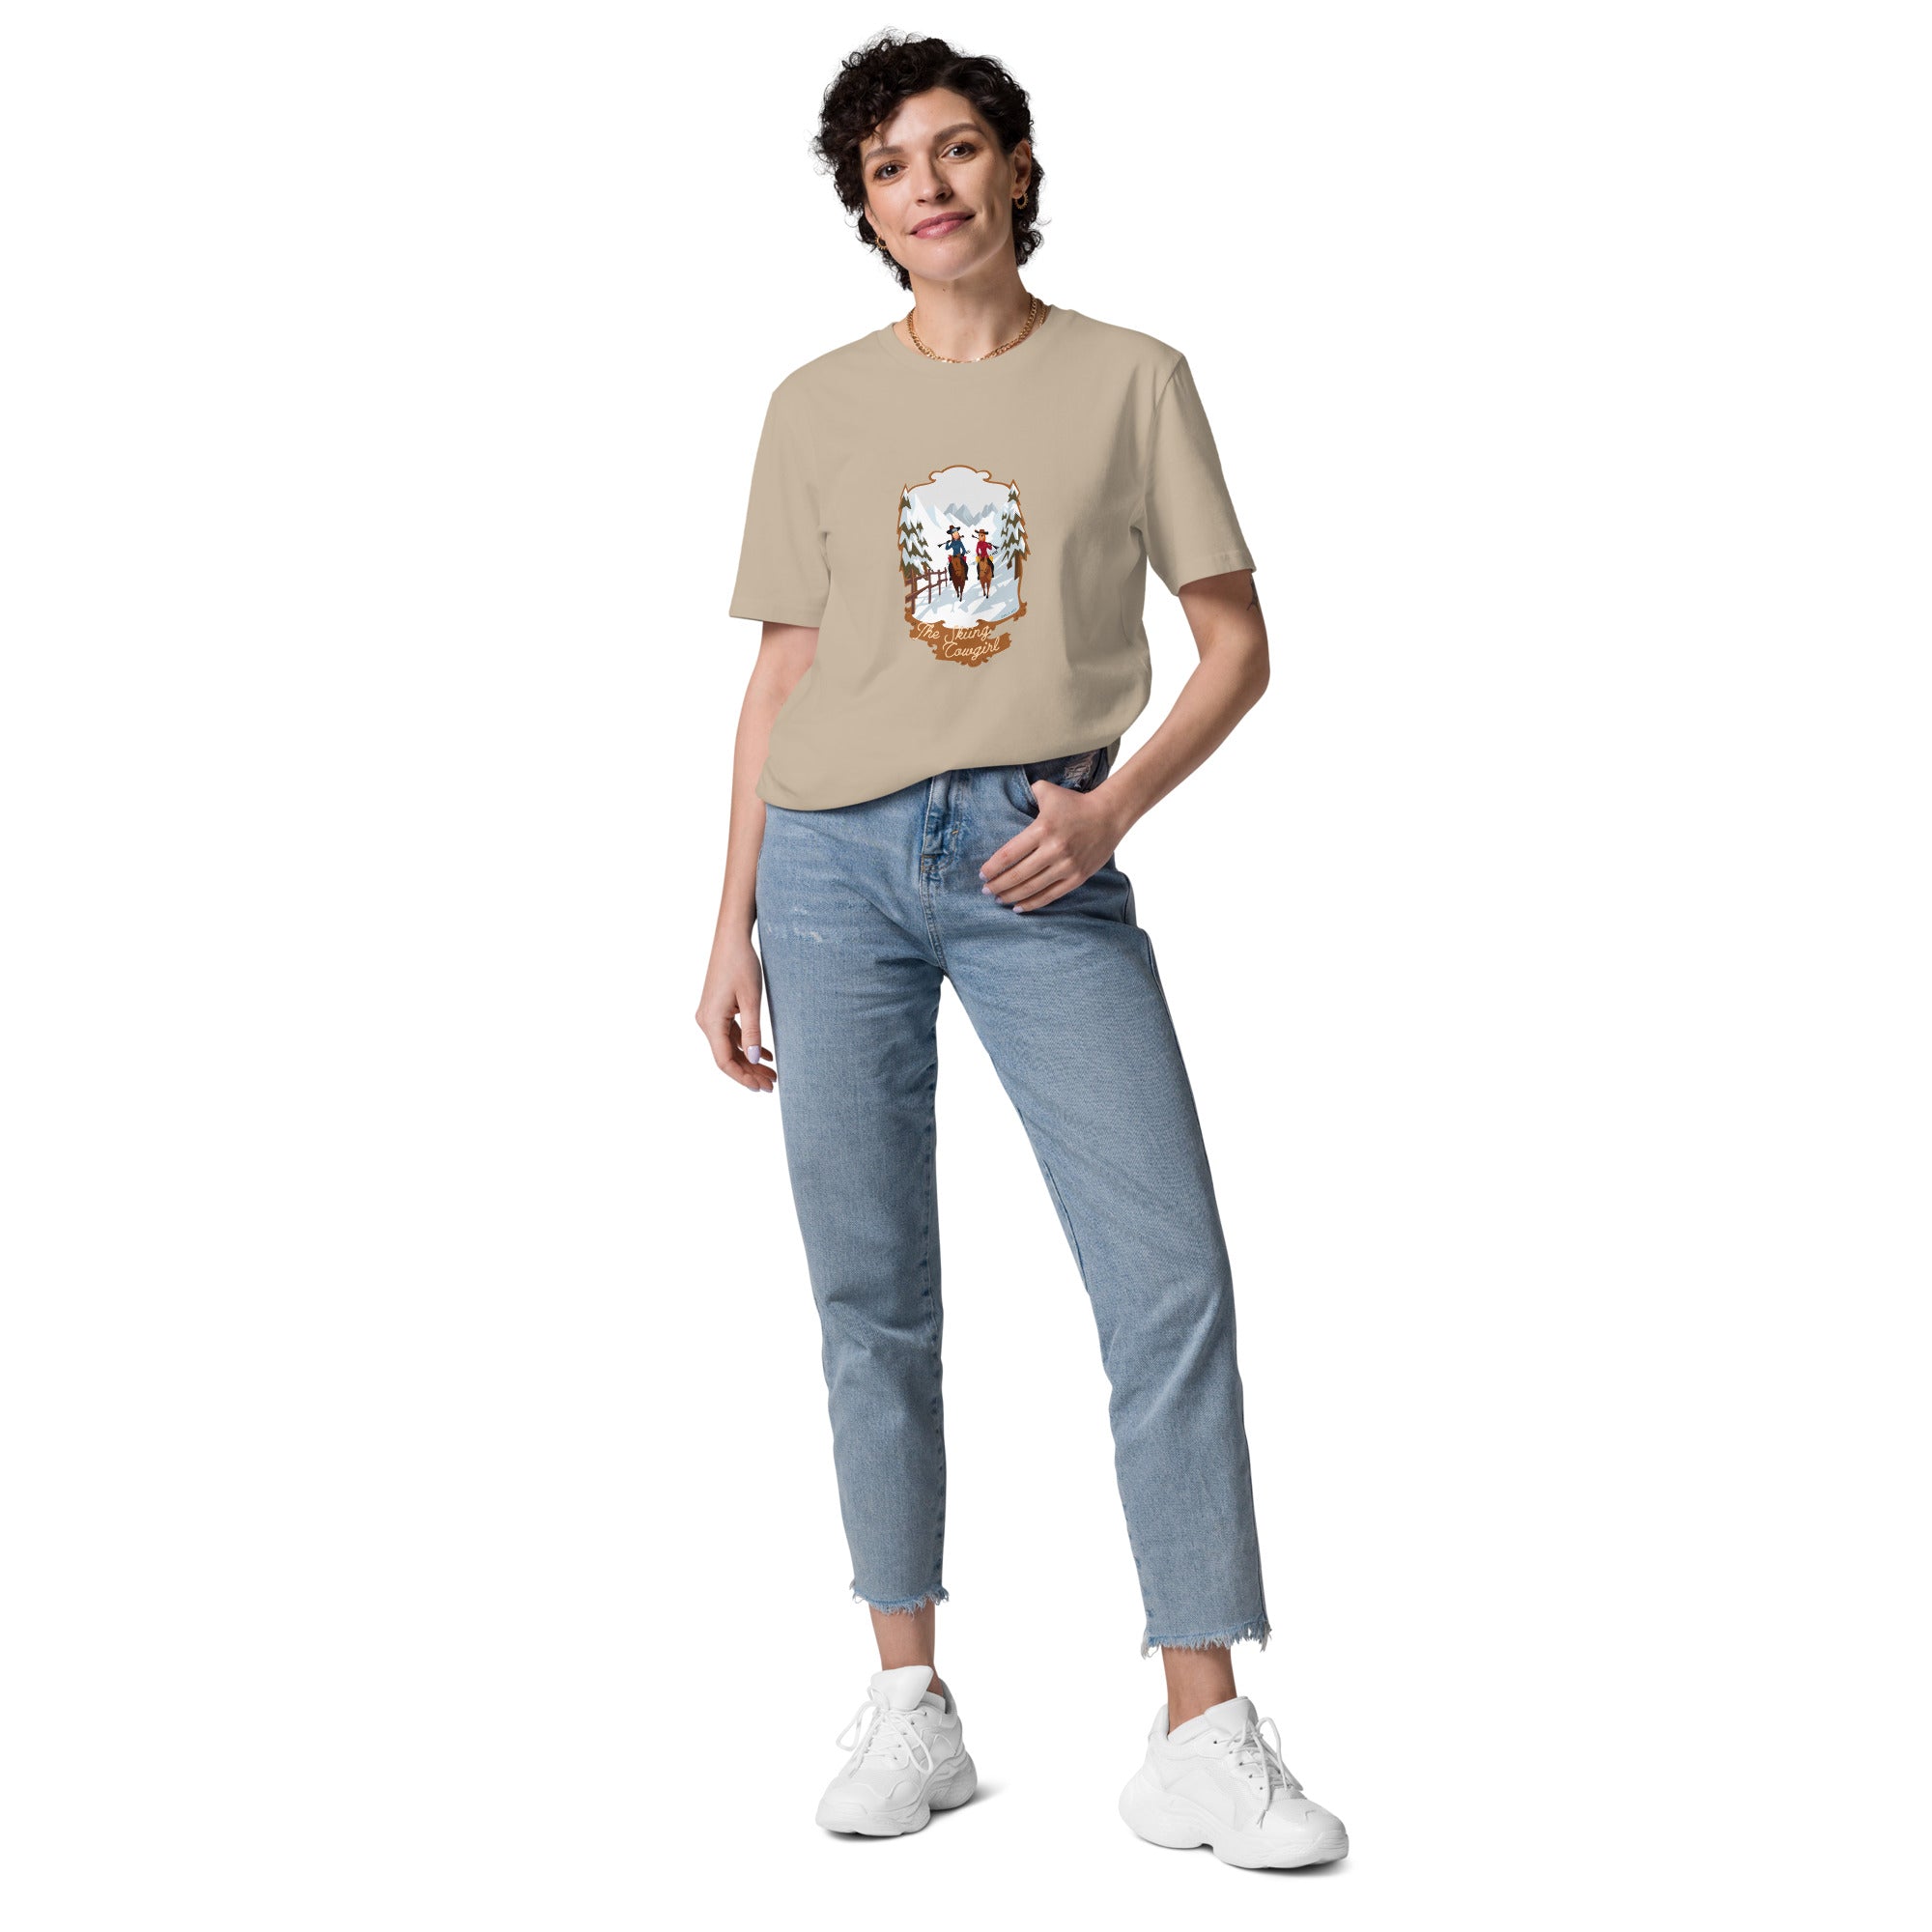 T-shirt unisexe en coton biologique The Skiing Cowgirl sur couleurs claires